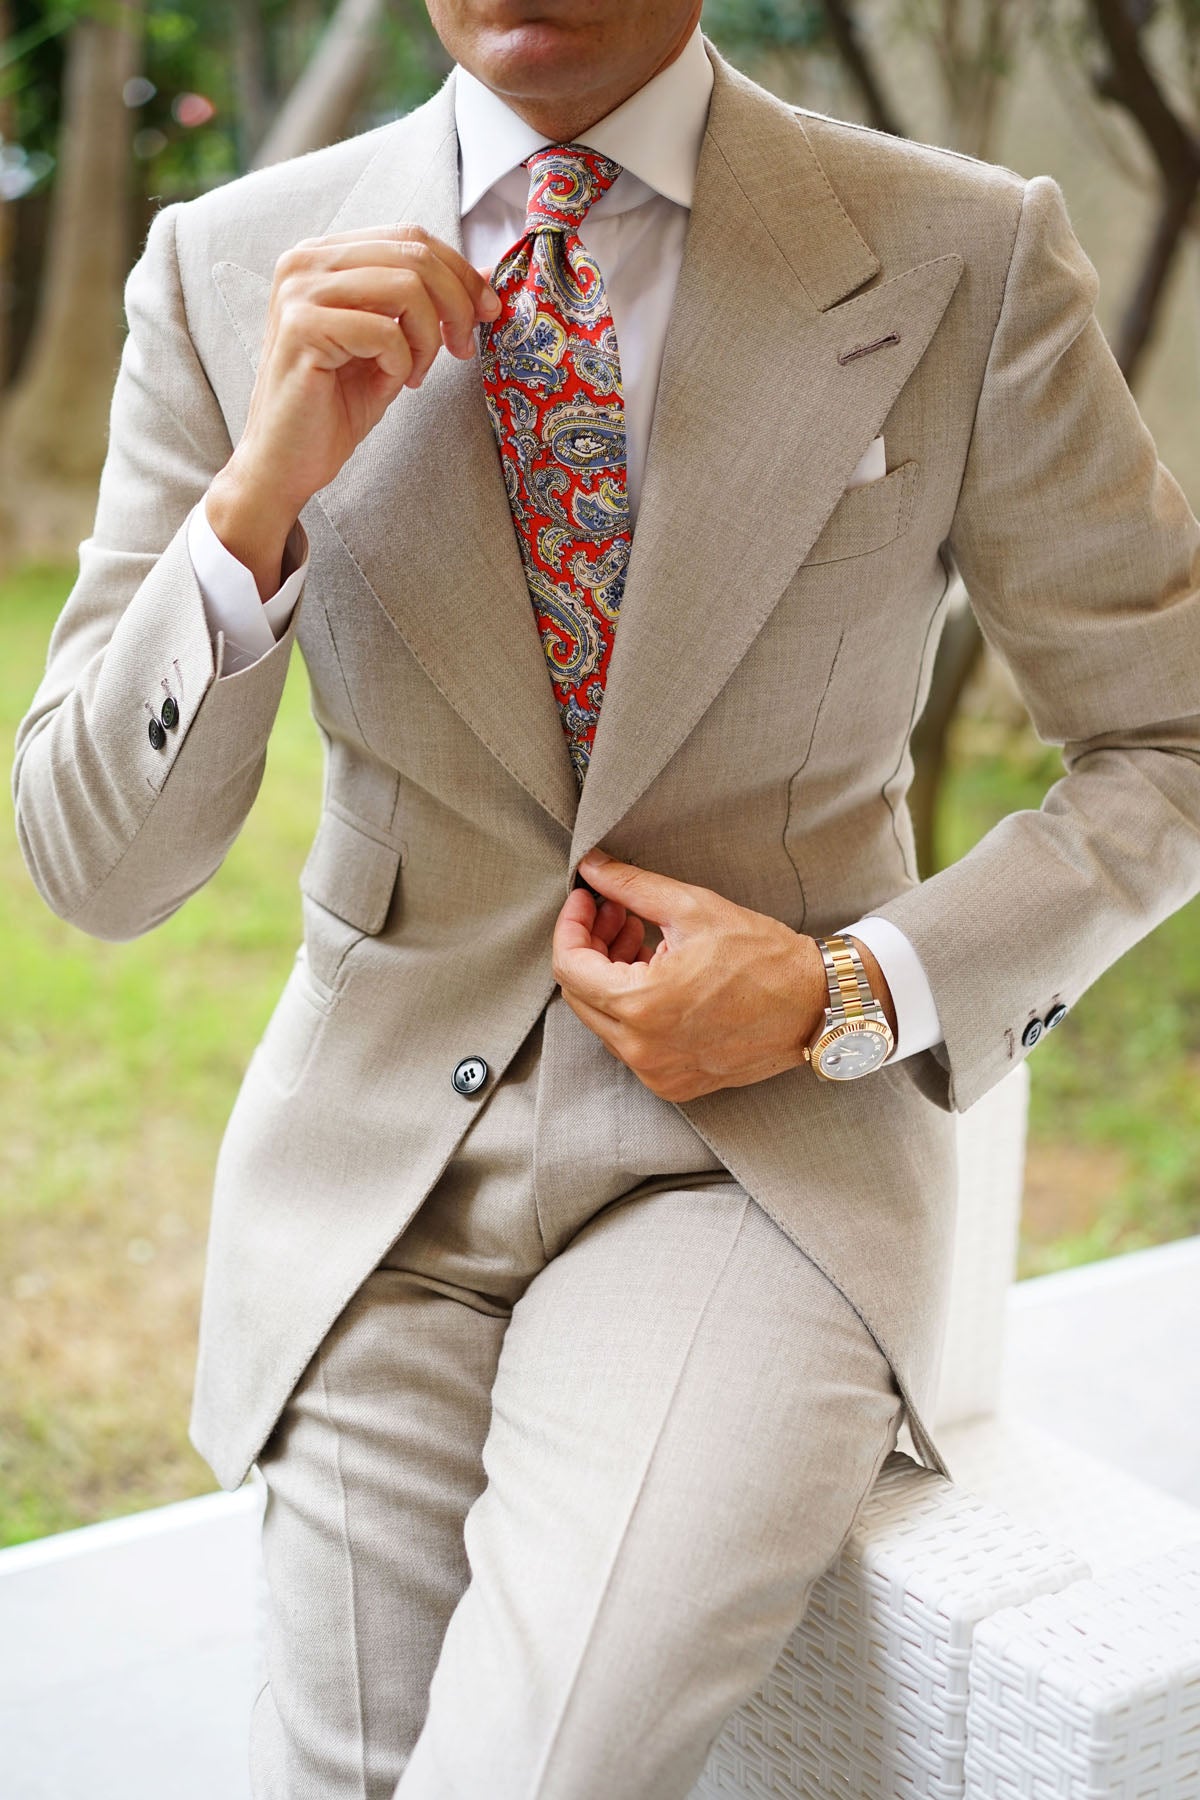 Ayatollah Paisley Necktie | Designer Tie for Men | Red Pattern Ties | OTAA